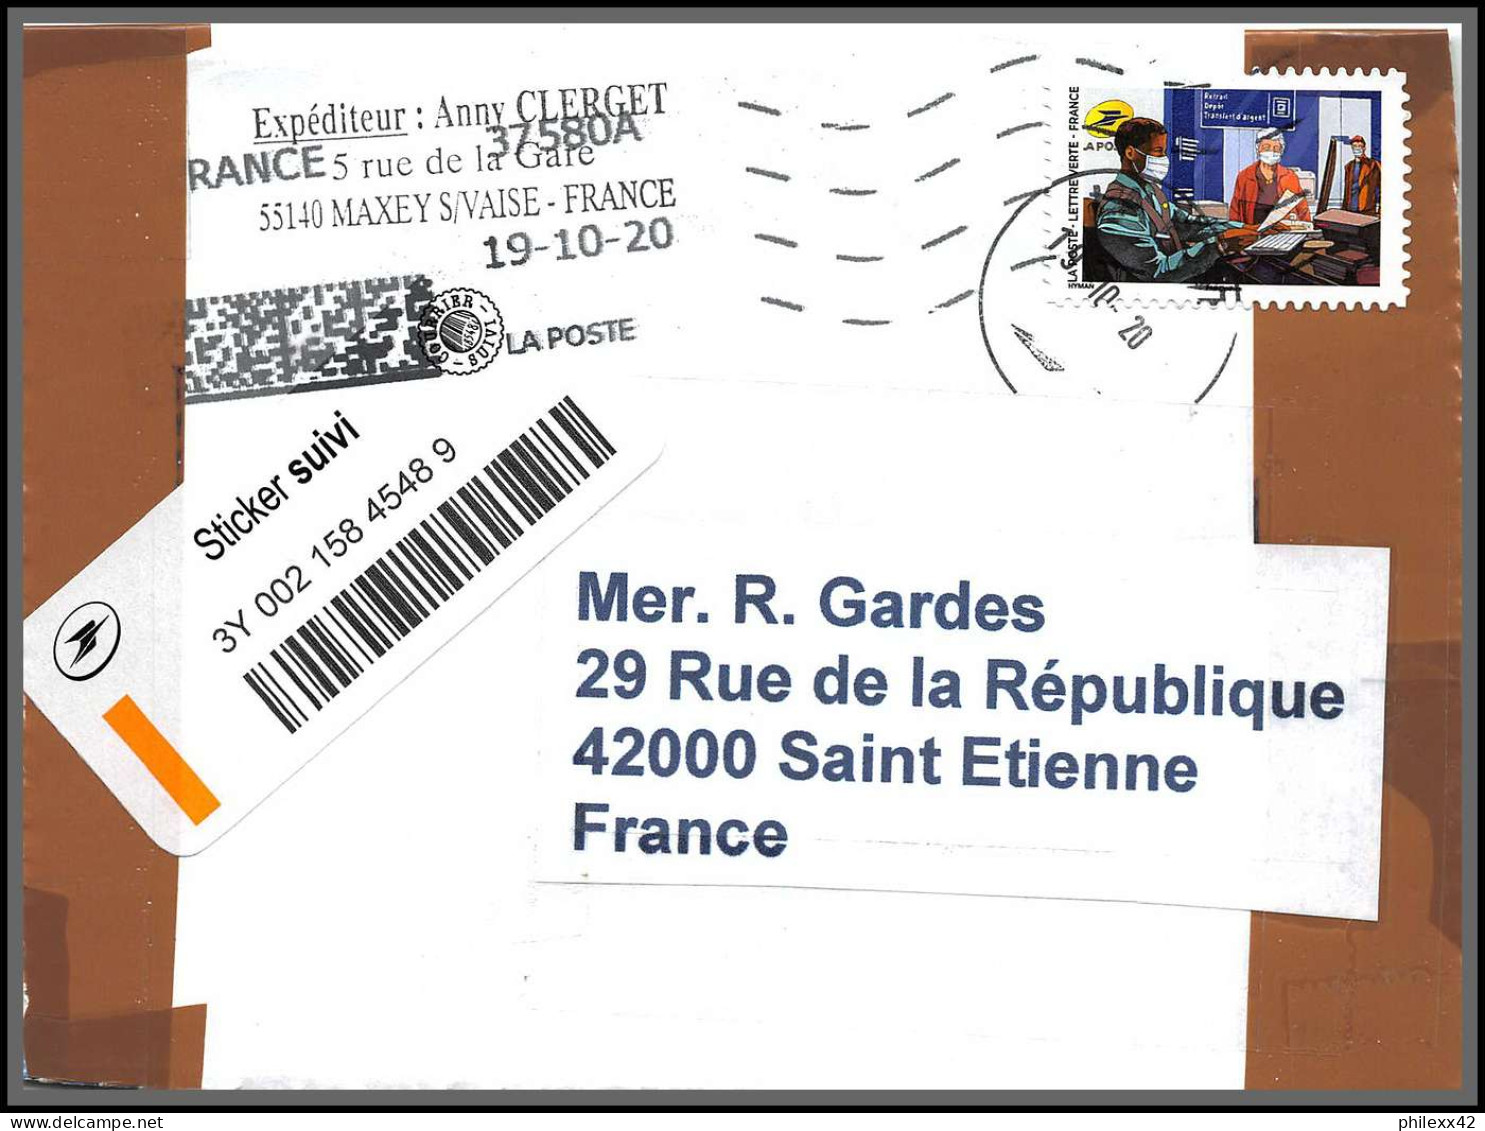 95880 - lot de 15 courriers lettres enveloppes de l'année 2020 divers affranchissements en EUROS